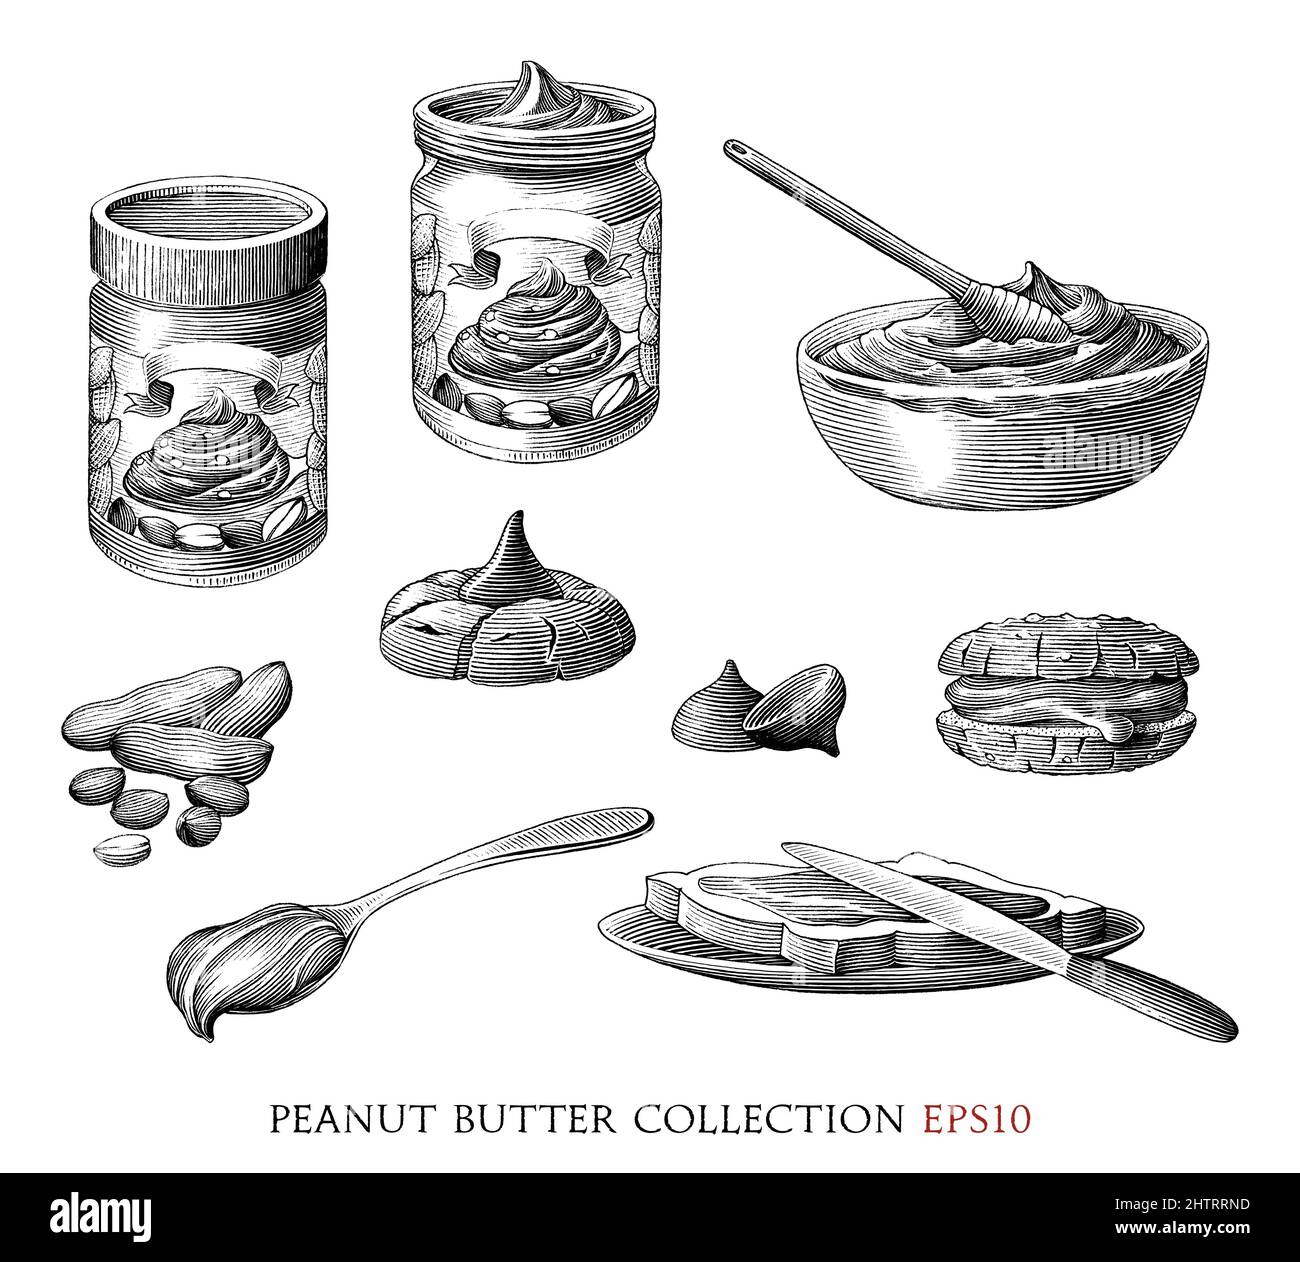 Collection de beurre d'arachide dessin à la main illustration de la gravure vintage Illustration de Vecteur